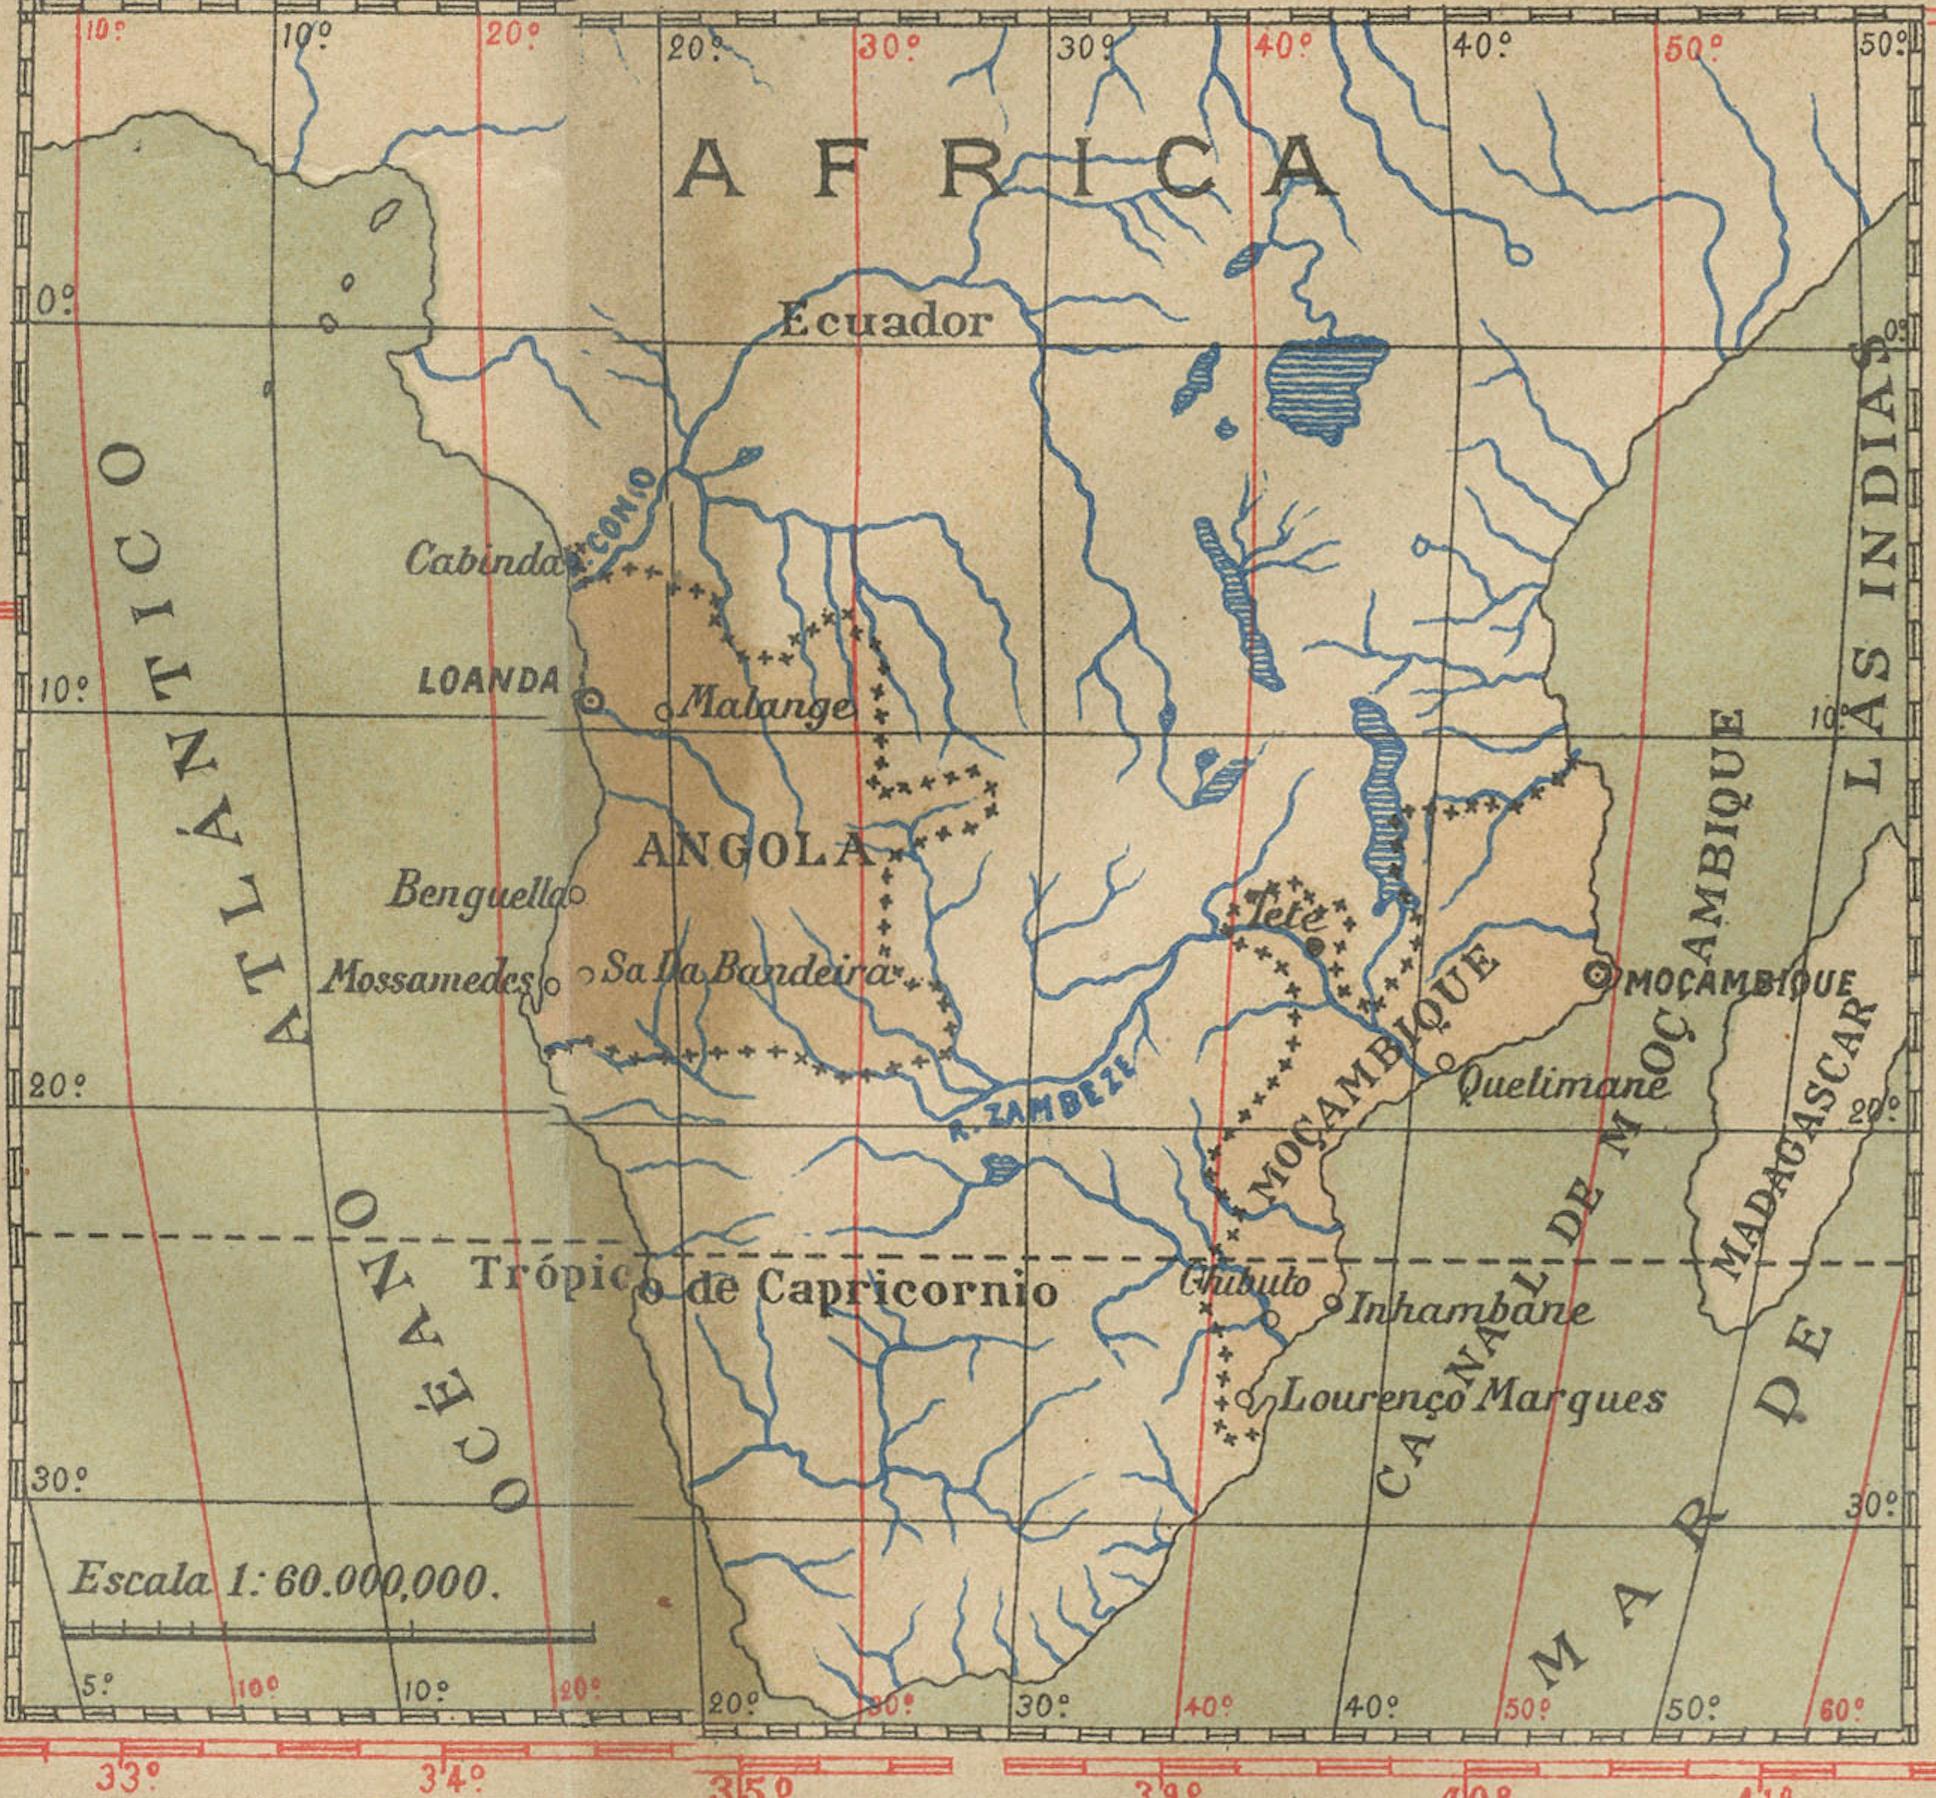 L'image à vendre est une carte historique originale de 1903 qui montre les colonies portugaises de l'Angola à gauche et du Mozambique à droite. Ces deux territoires du continent africain constituaient des parties importantes de l'empire d'outre-mer